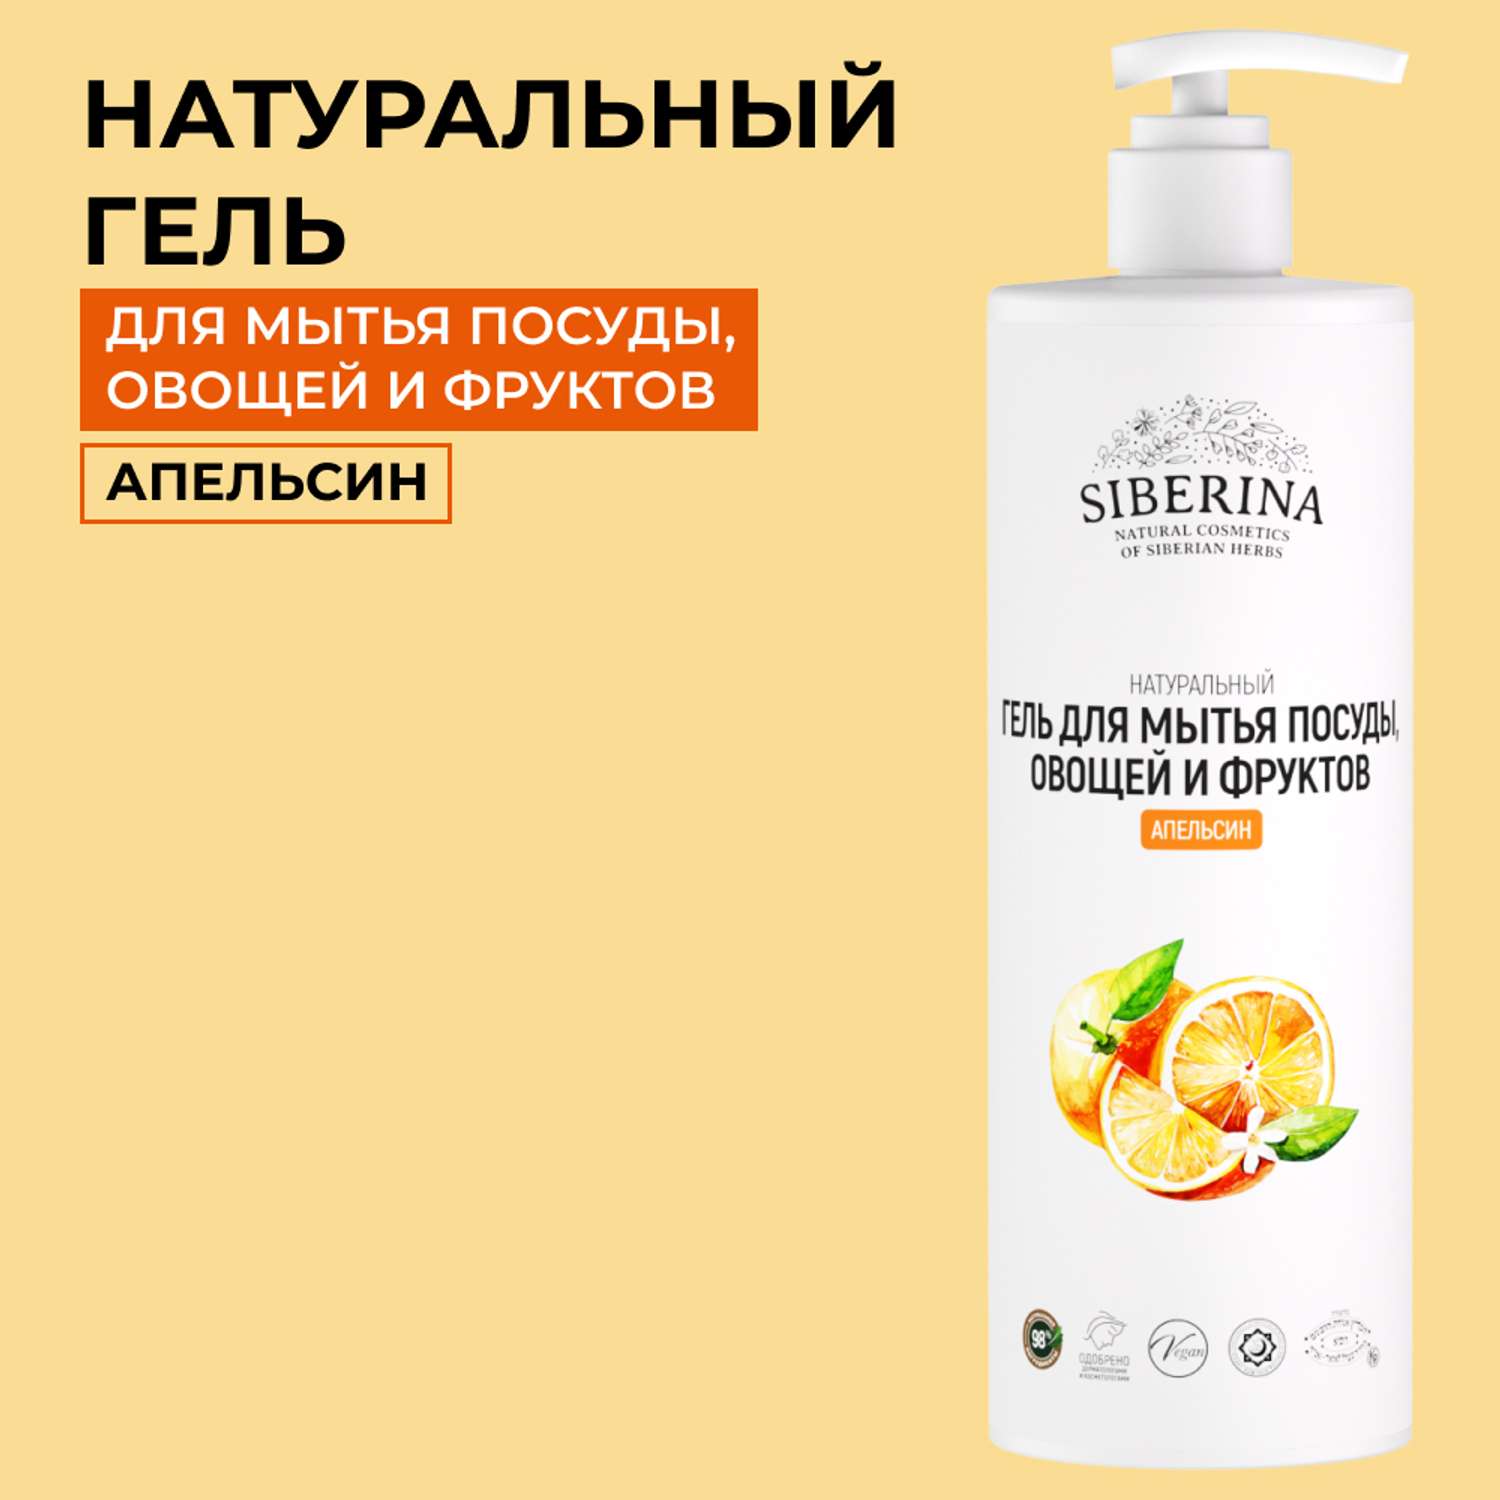 Гель для мытья посуды Siberina натуральный «Апельсин» овощей и фруктов 400 мл - фото 1